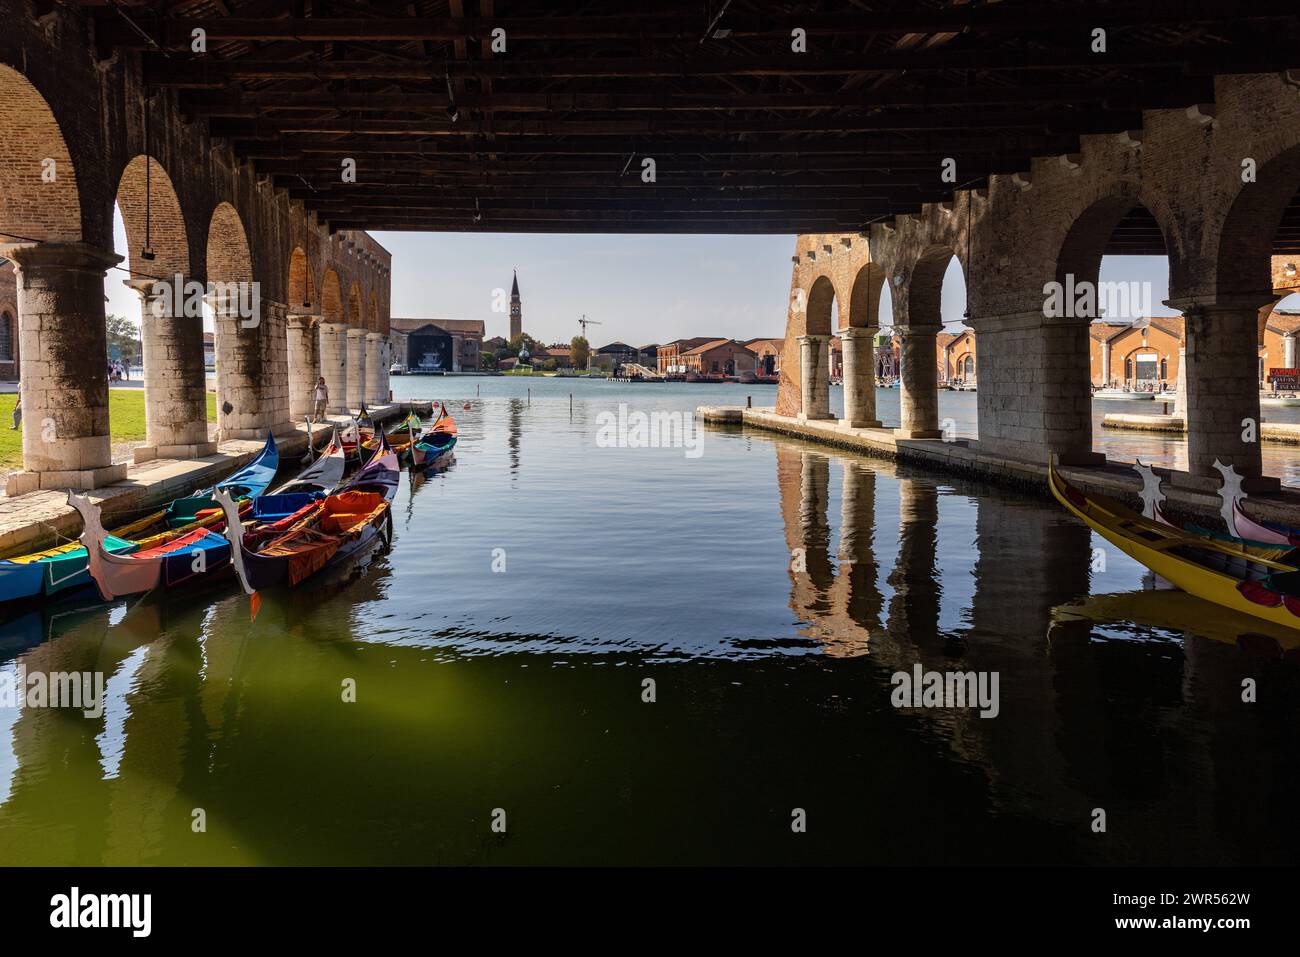 Venezia, Italia - l'Arsenale di Venezia. Il Gaggiandre, due magnifici cantieri navali costruiti tra il 1568 e il 1573 su alcuni disegni attribuiti a Jacopo sa Foto Stock